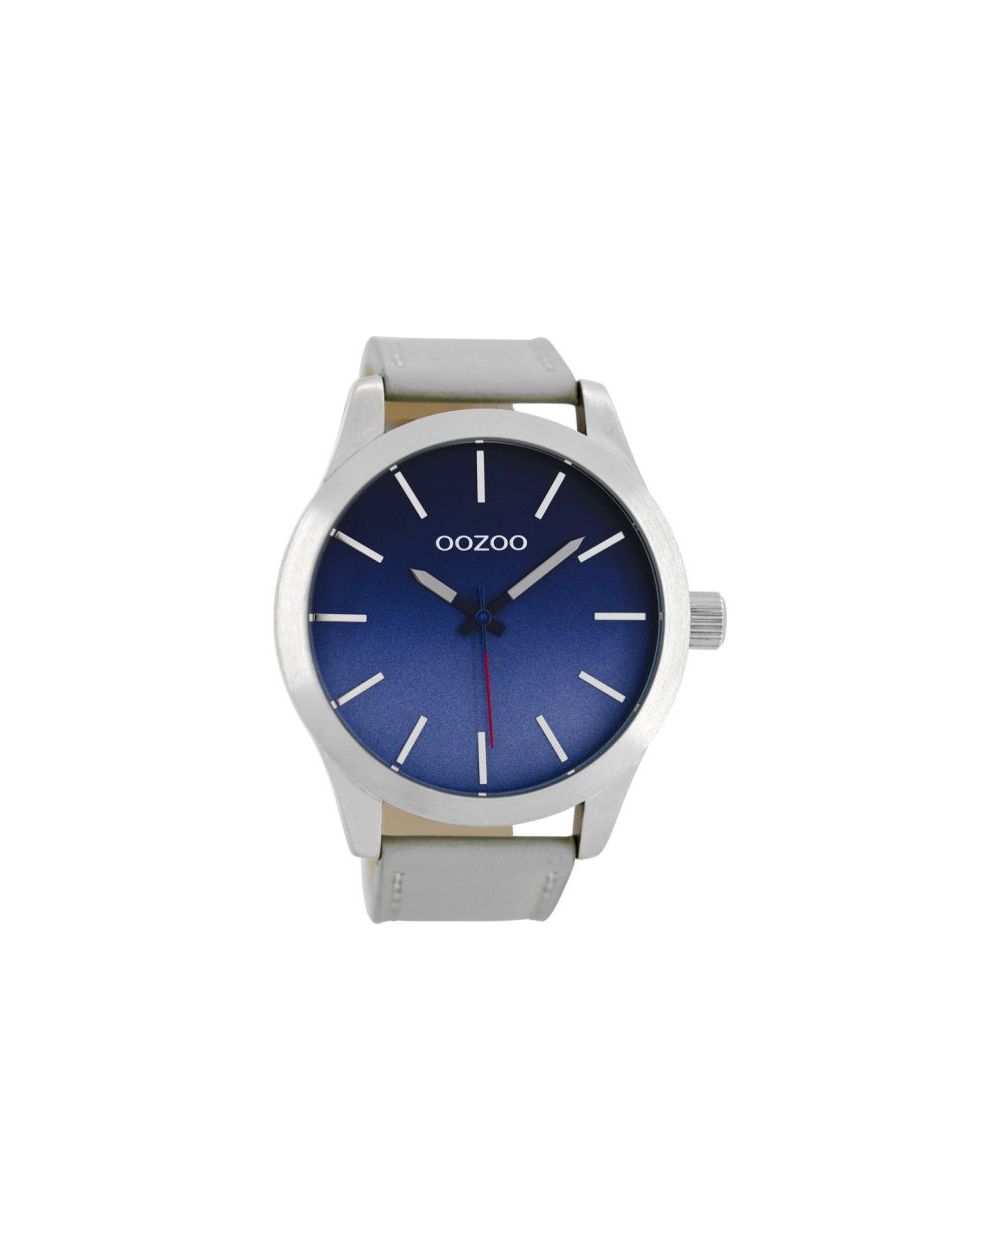 Oozoo montre/watch/horloge C8555